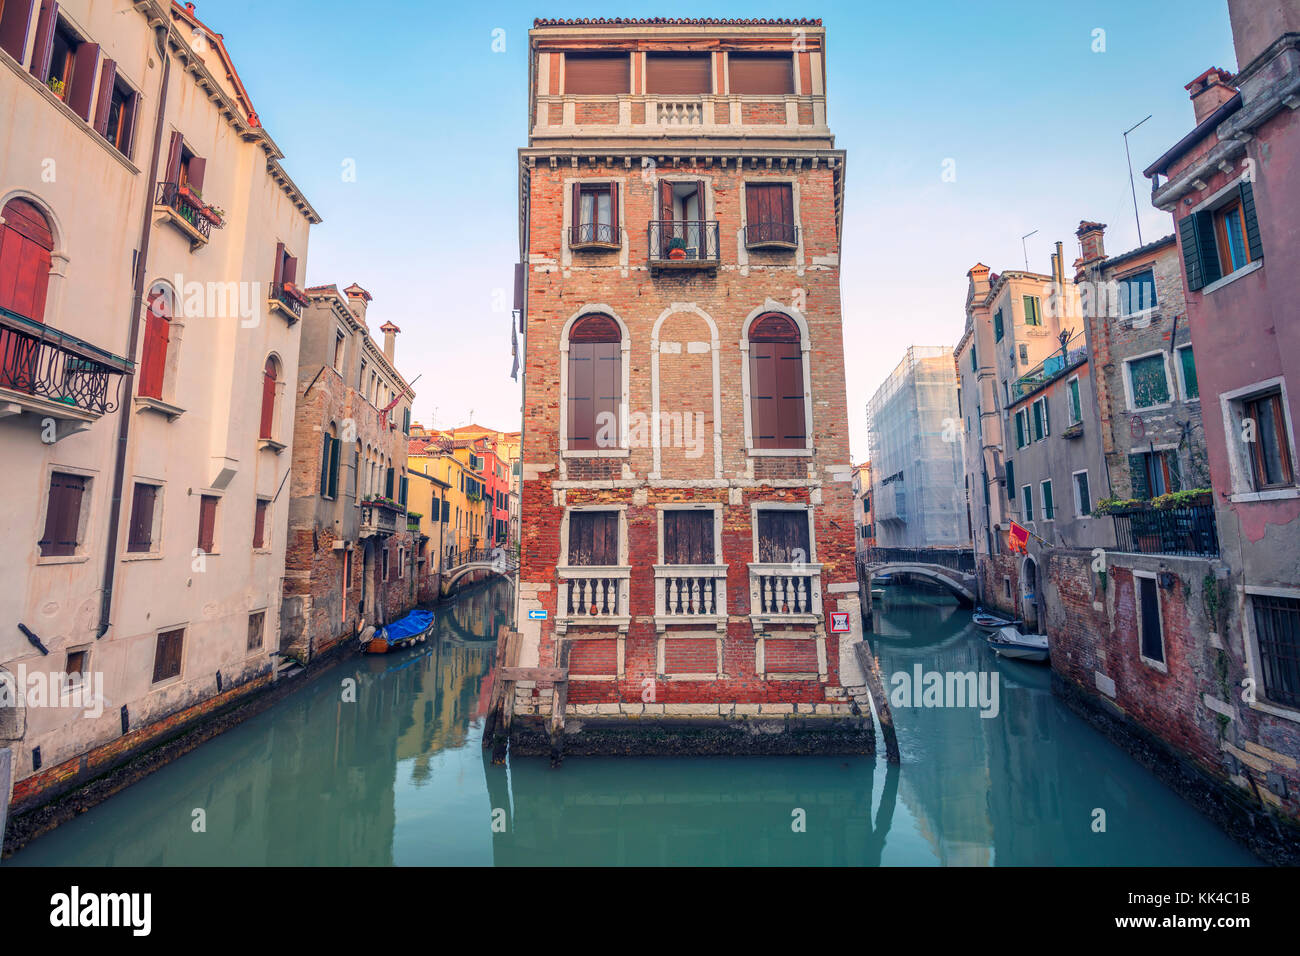 Venecia. Paisaje urbano imagen de estrechos canales en Venecia durante el atardecer. Foto de stock